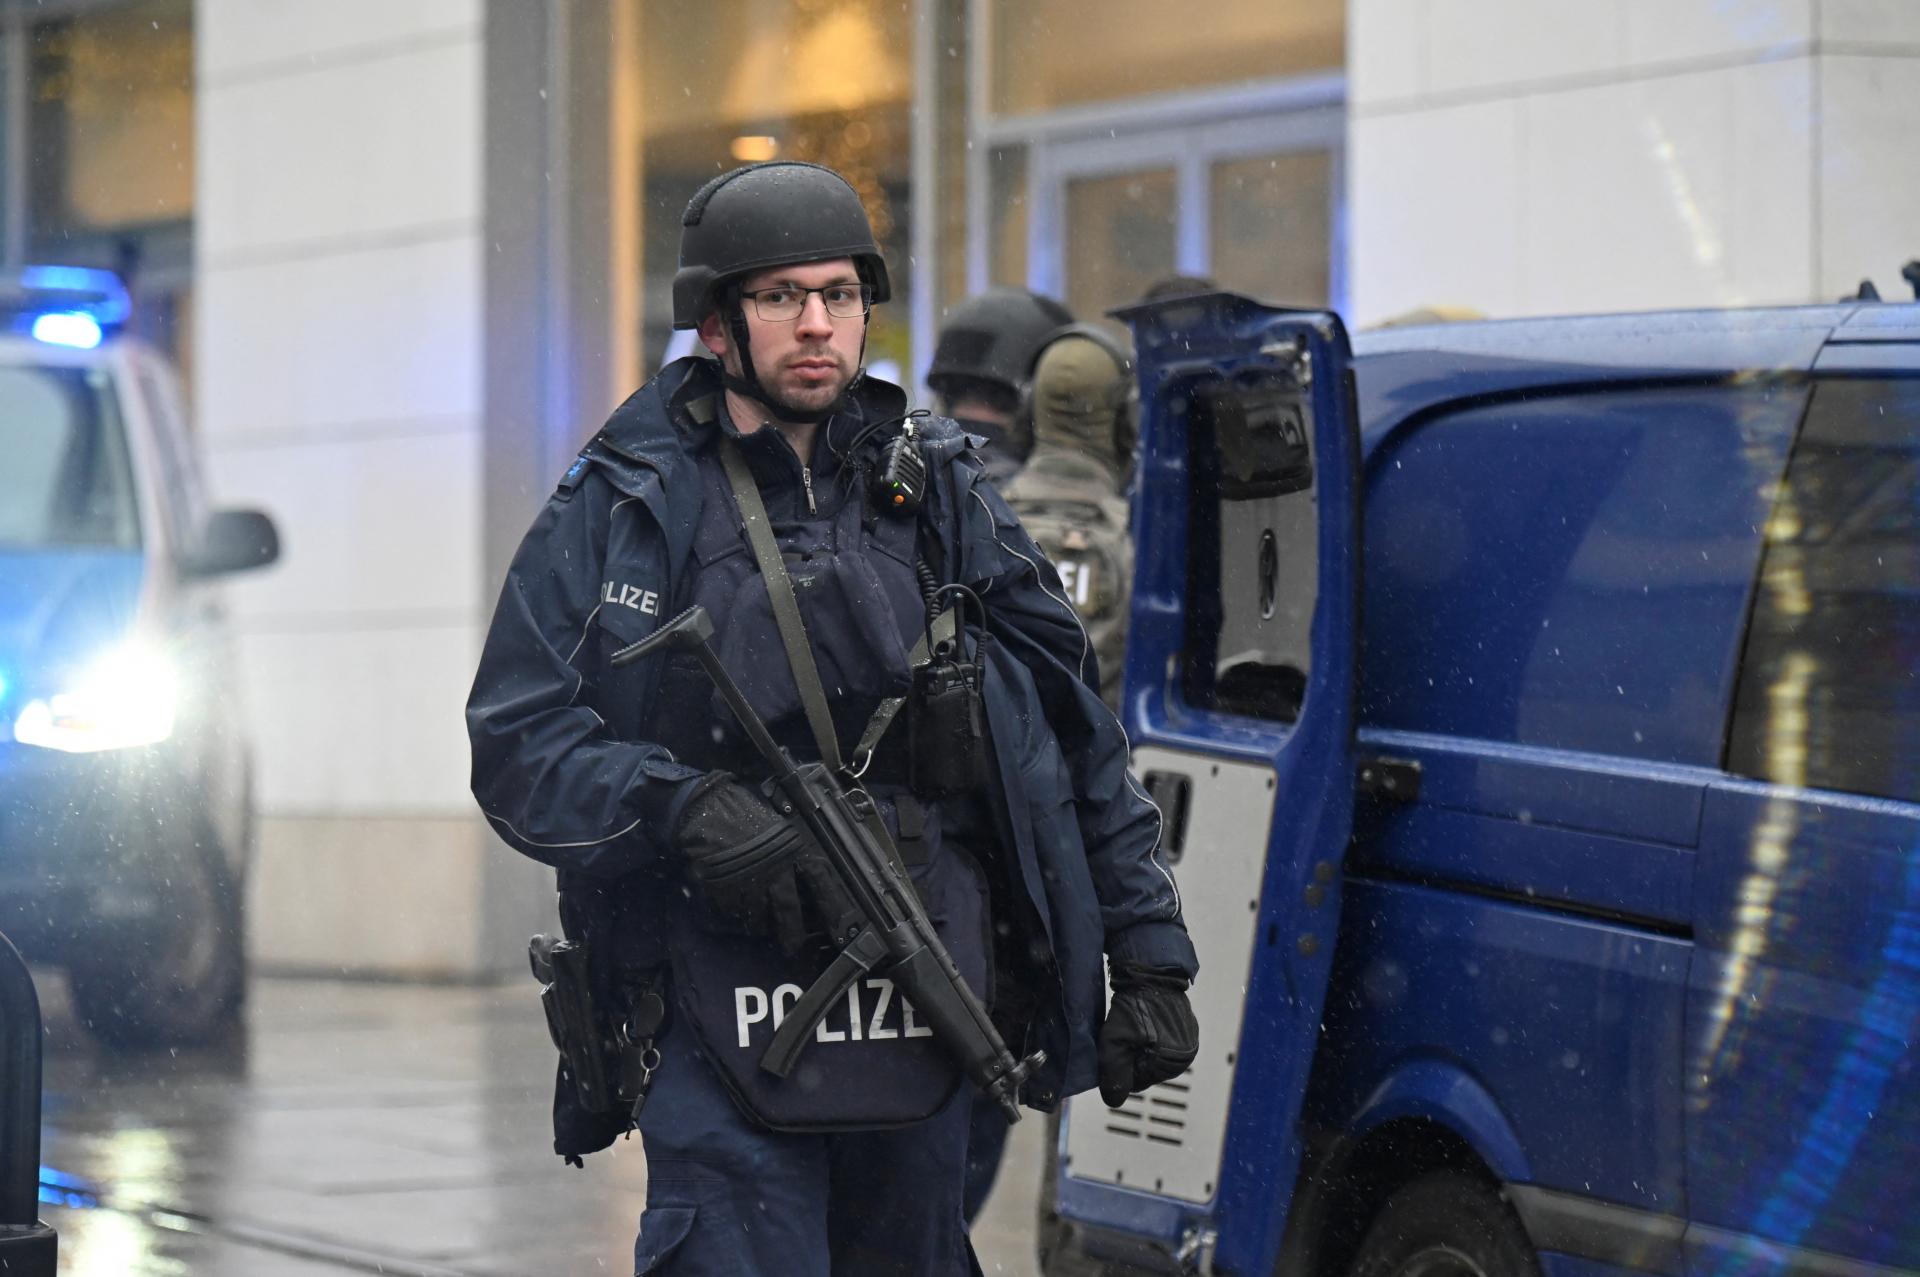 Nemecko si predvolalo iránskeho veľvyslanca za podpaľačský útok v meste Bochum